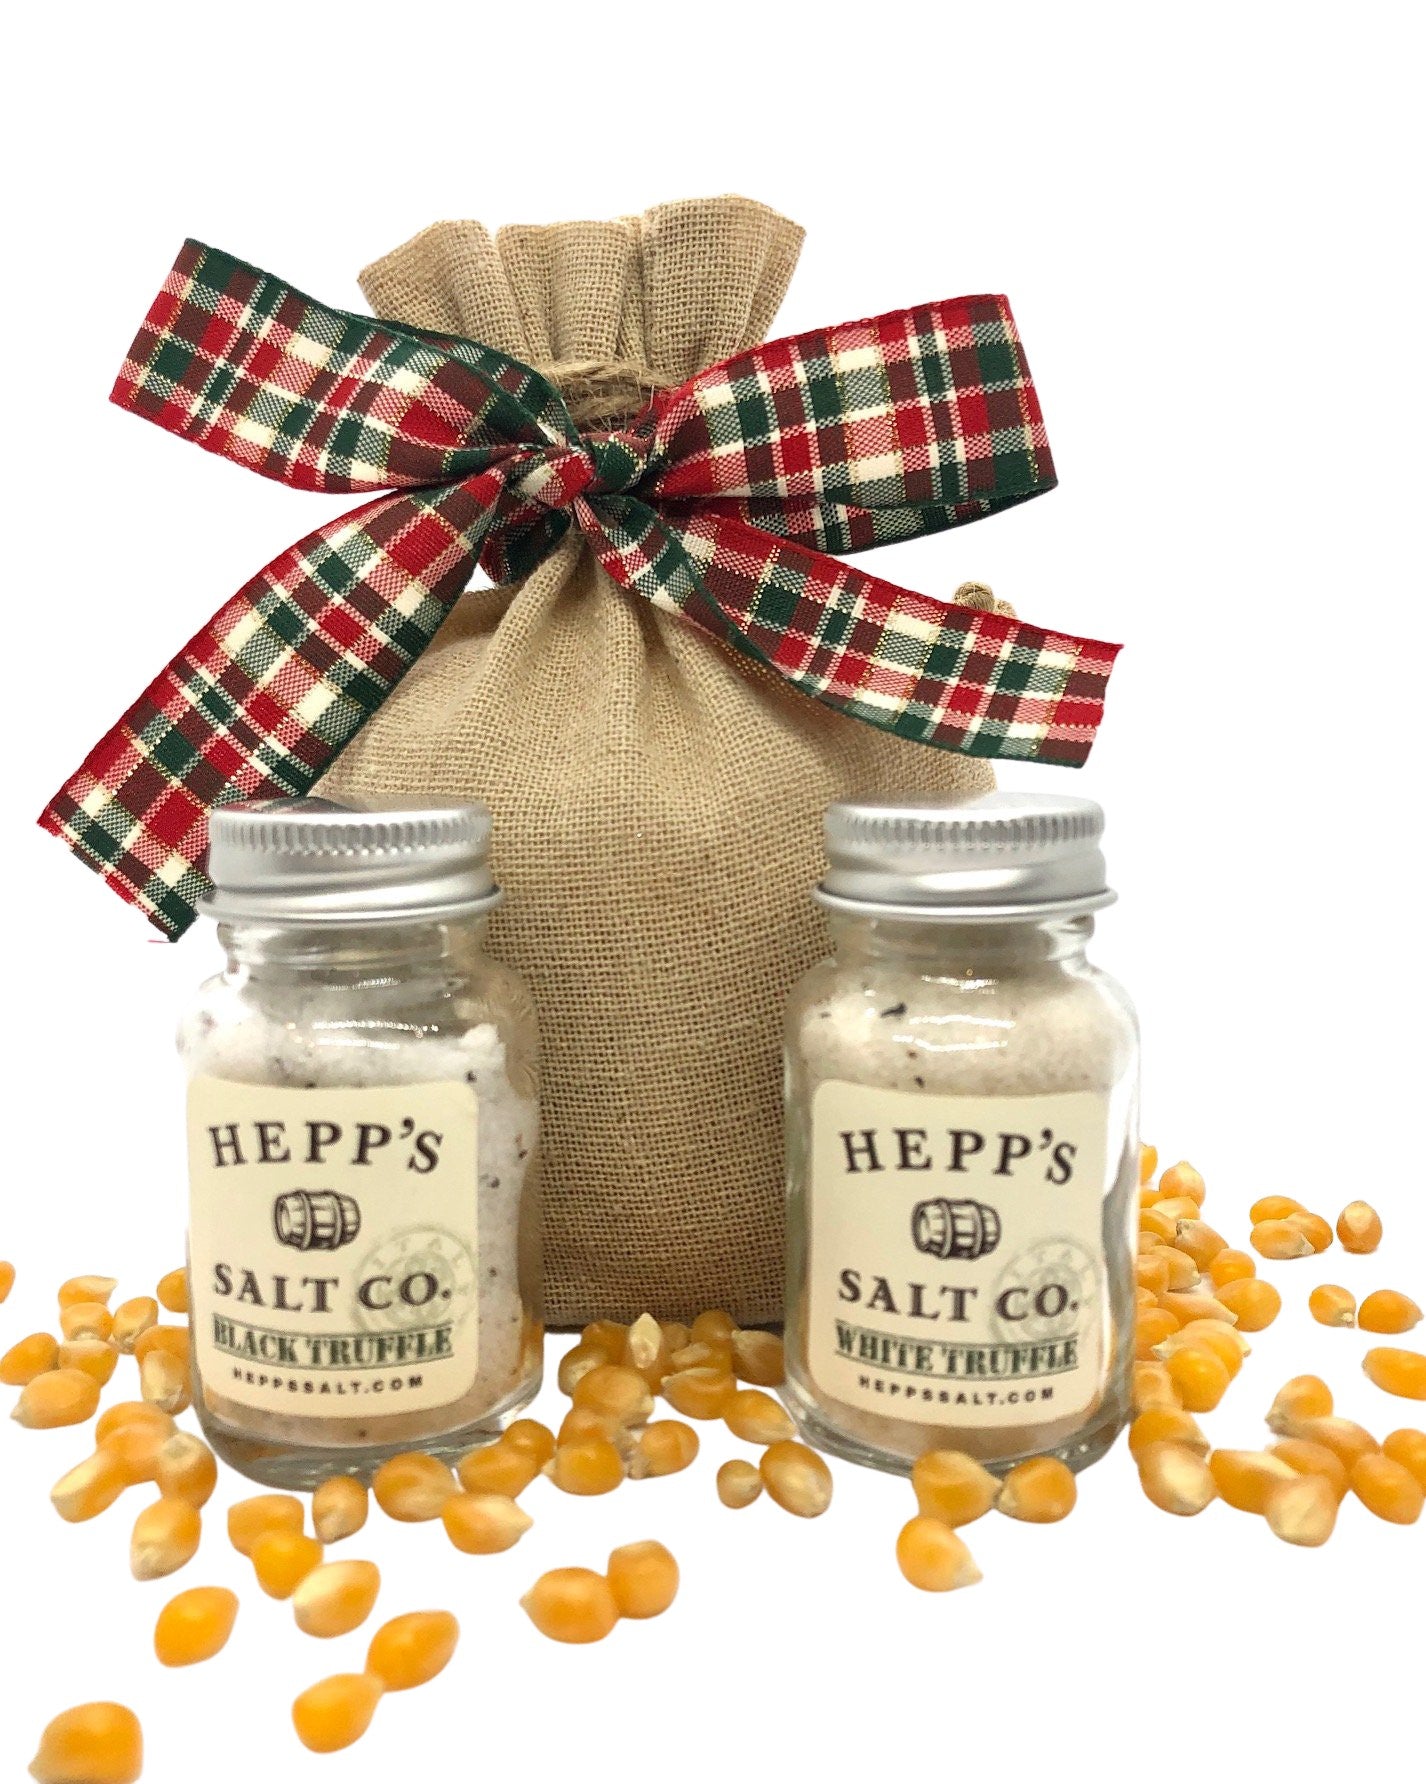 HEPPS Truffle Popcorn Kit - HEPPS SALT CO. 